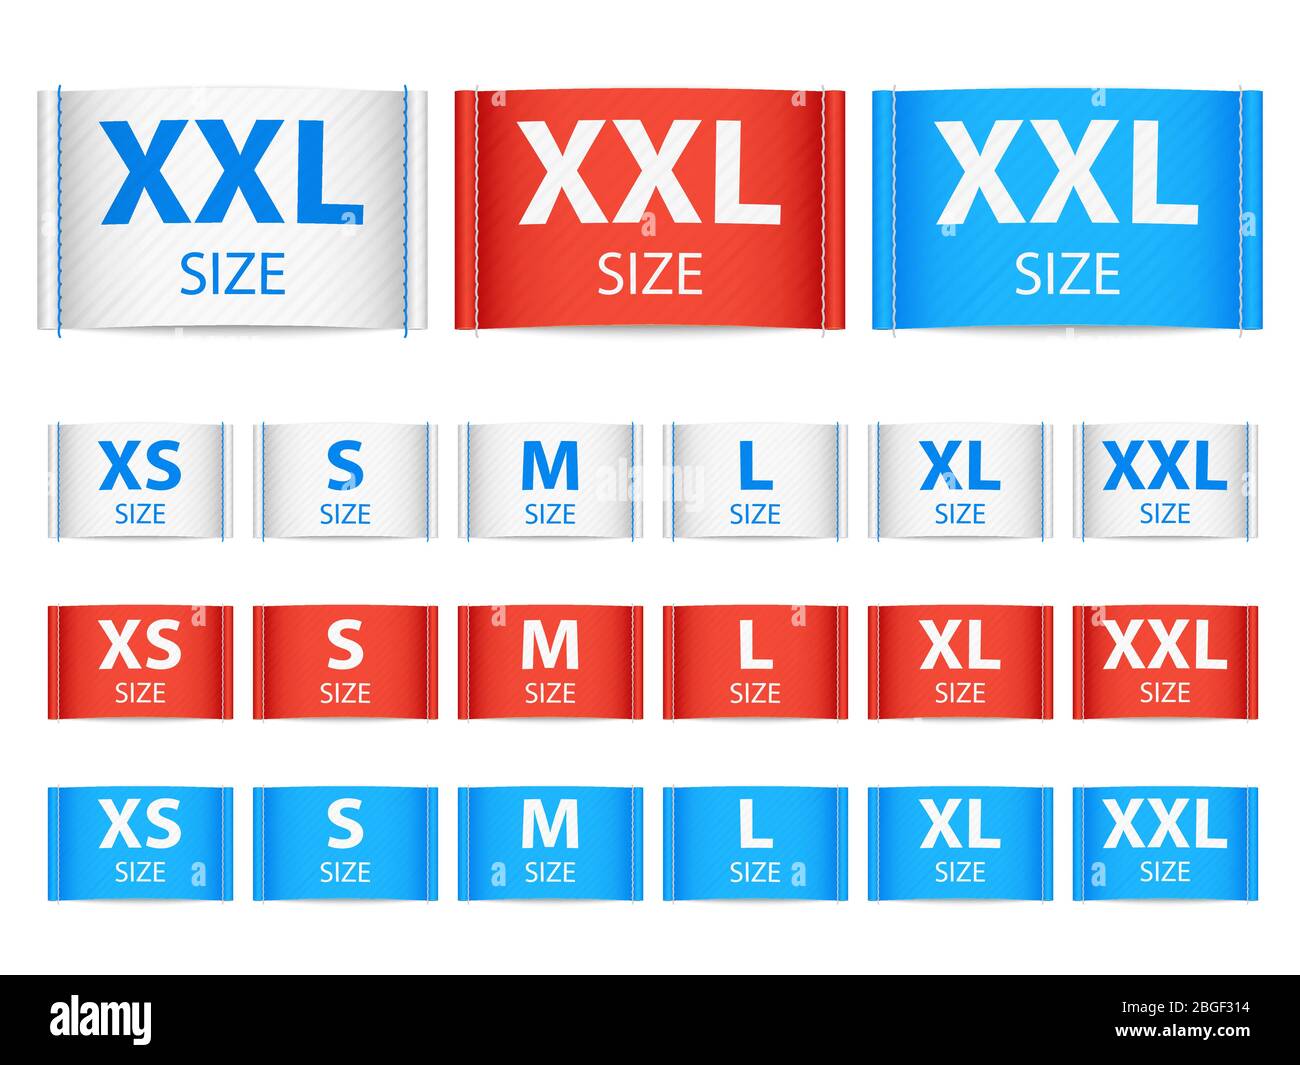 Xxl size Banque de photographies et d'images à haute résolution - Alamy